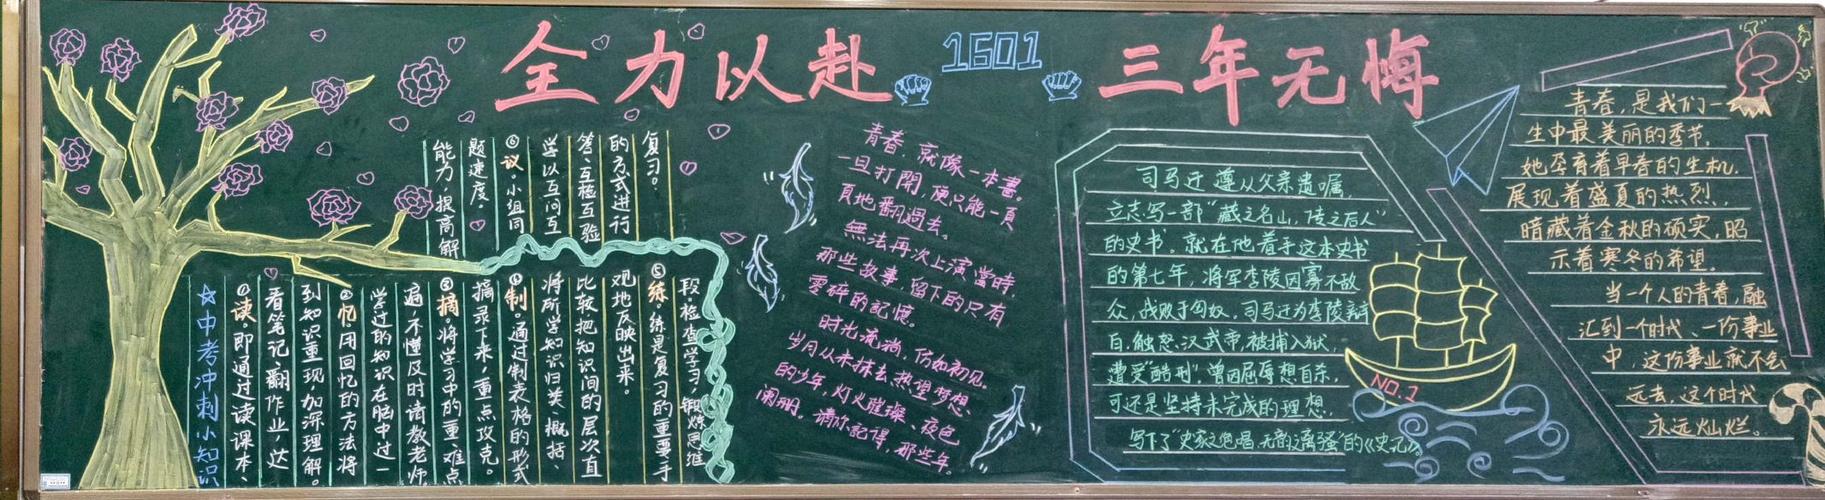 沅江市玉潭学校初中部2019上期第一学月黑板报评比总第6期